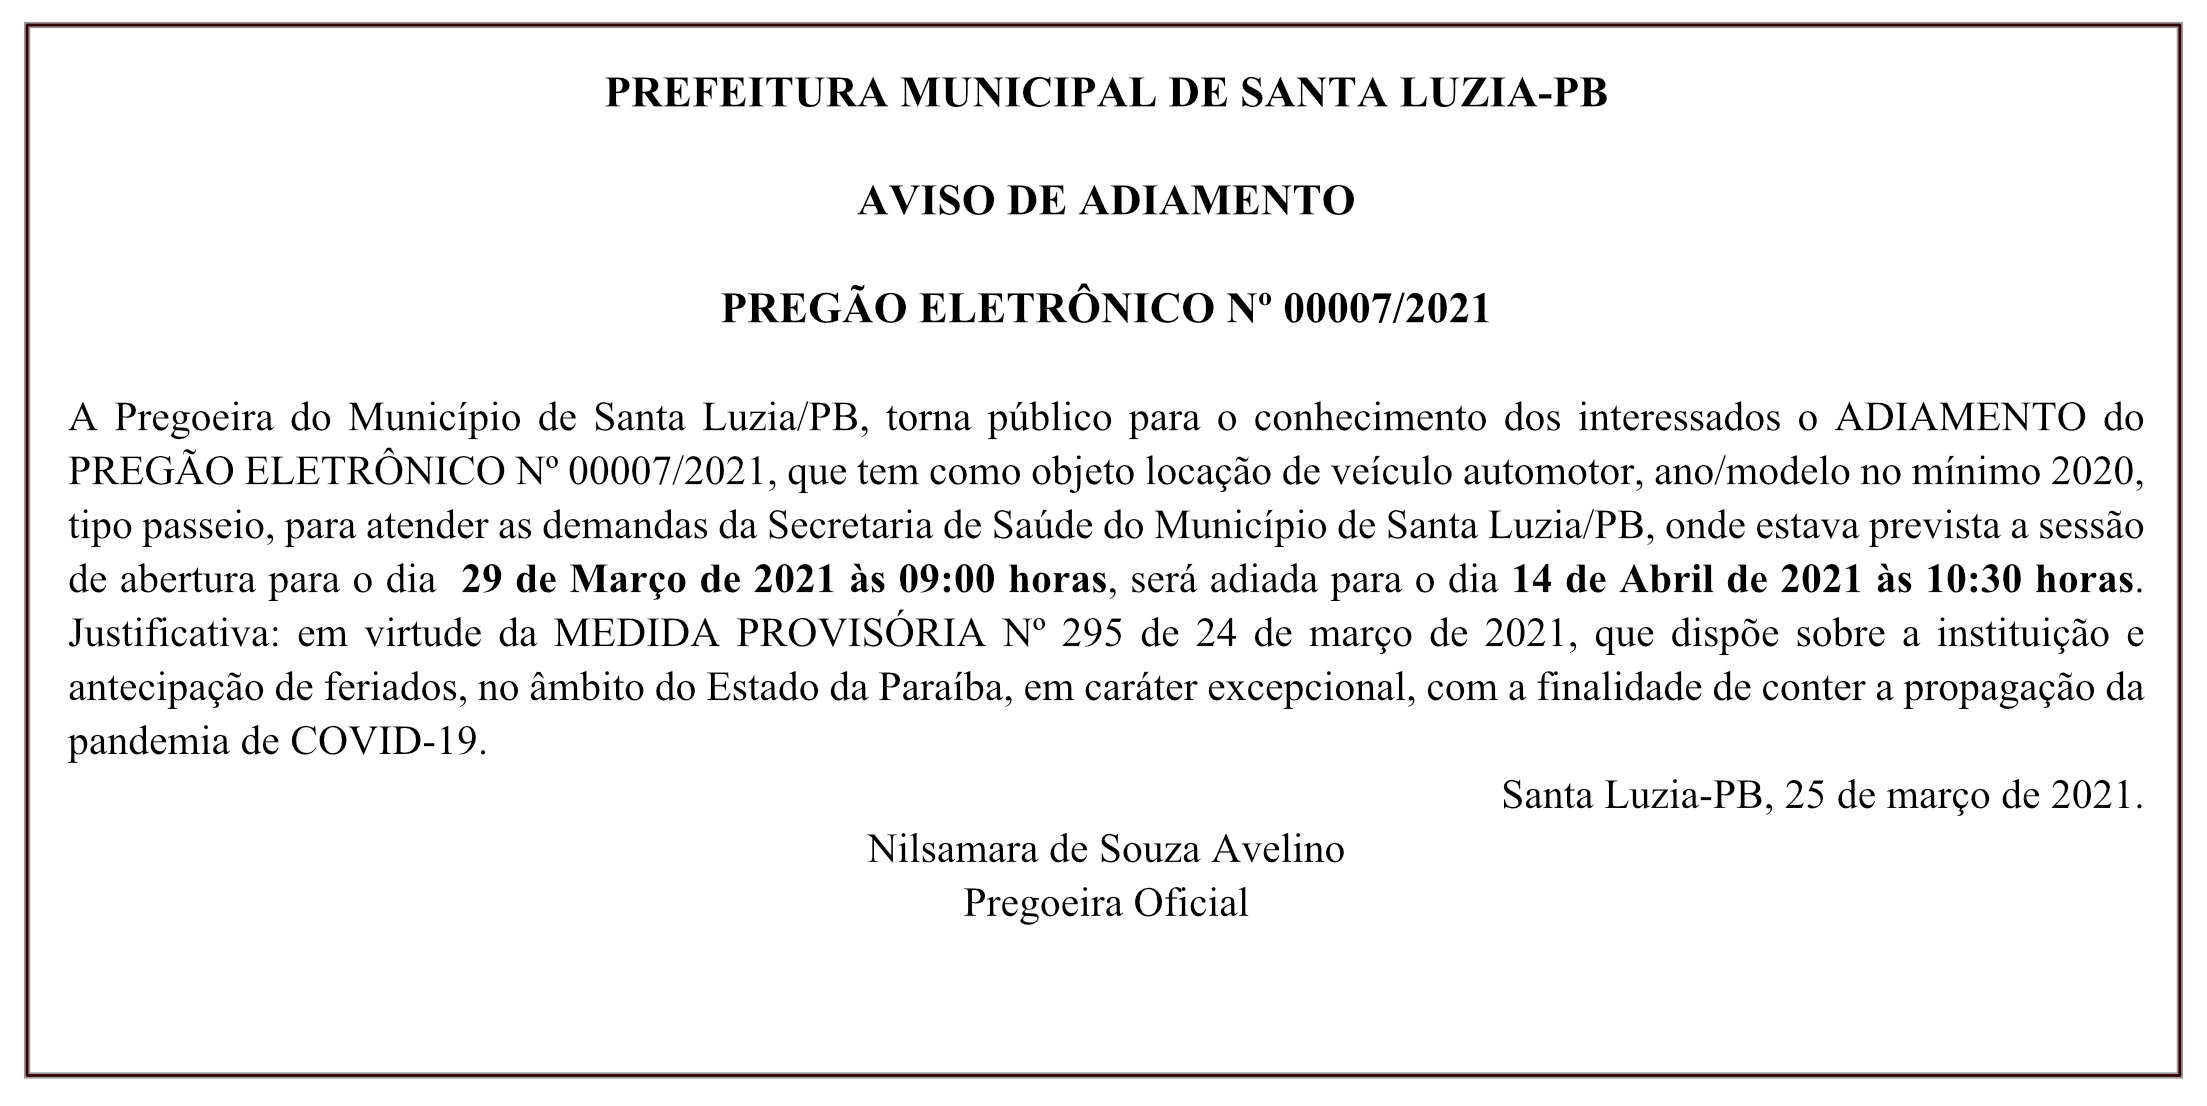 PREFEITURA MUNICIPAL DE SANTA LUZIA – AVISO DE ADIAMENTO – PREGÃO ELETRÔNICO Nº 00007/2021